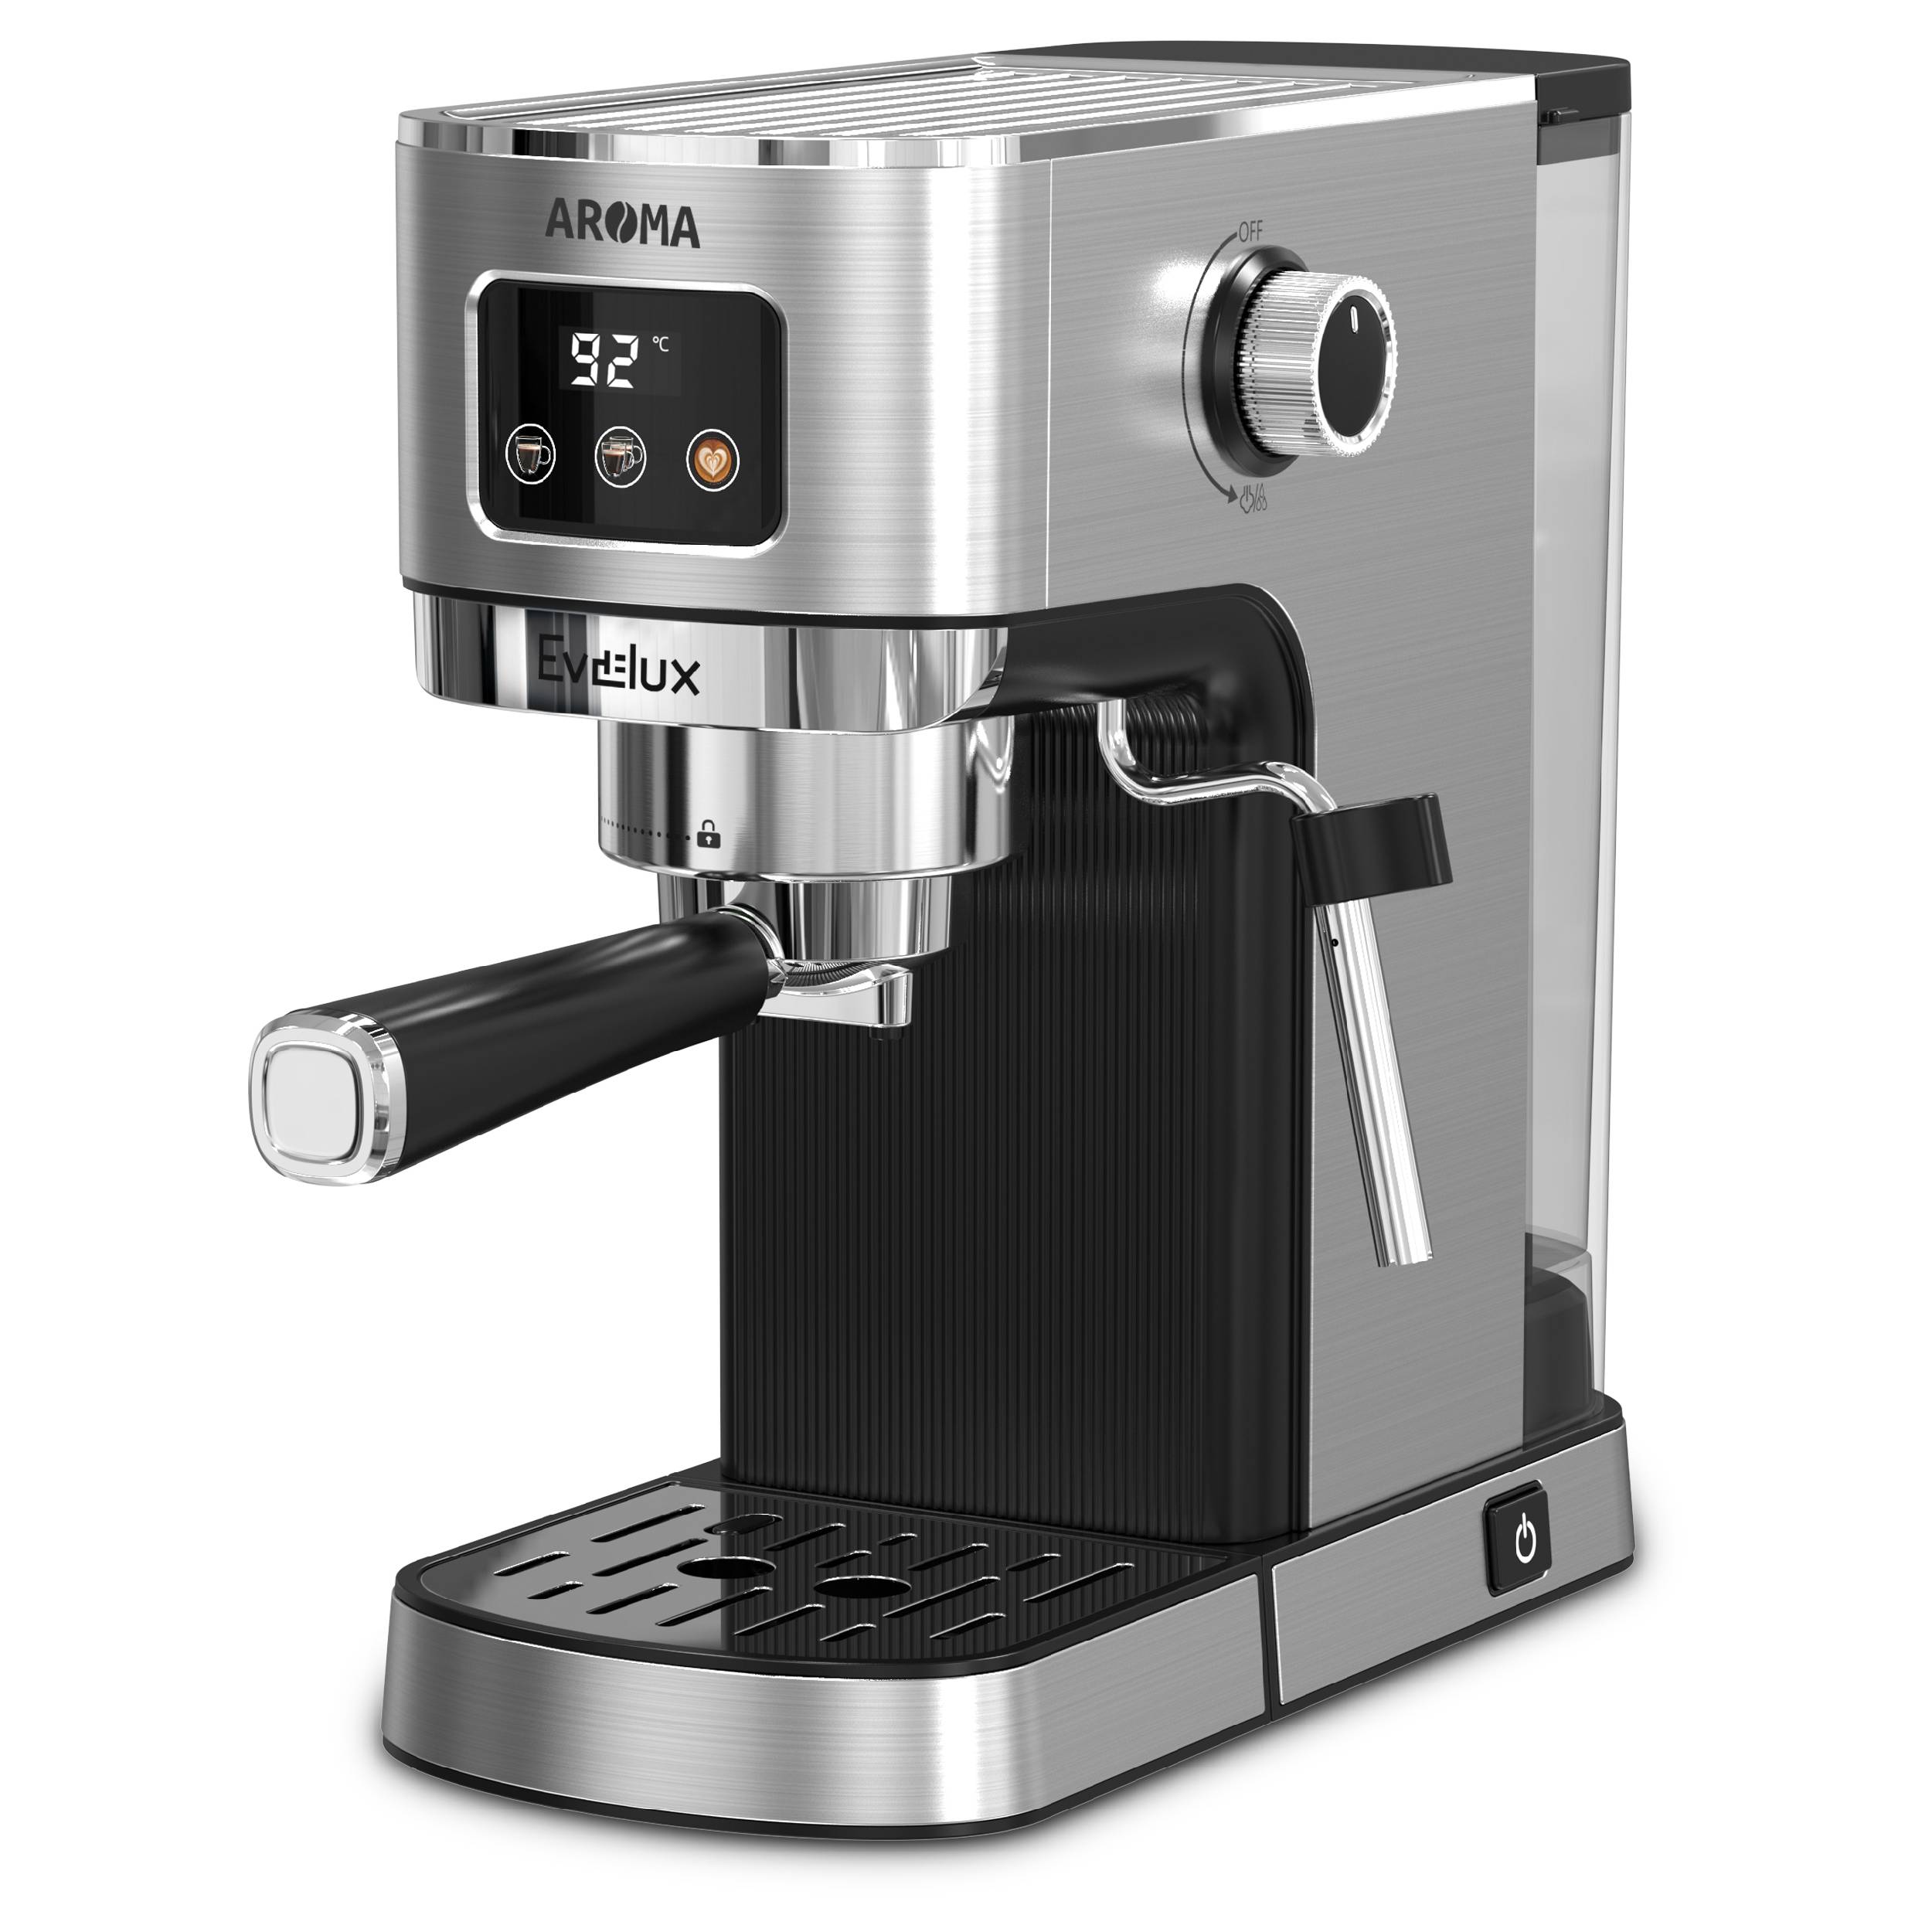 Рожковая кофеварка Evelux ECM 1009 Aroma серебристый, серый рожковая кофеварка vitek vt 1524 серый